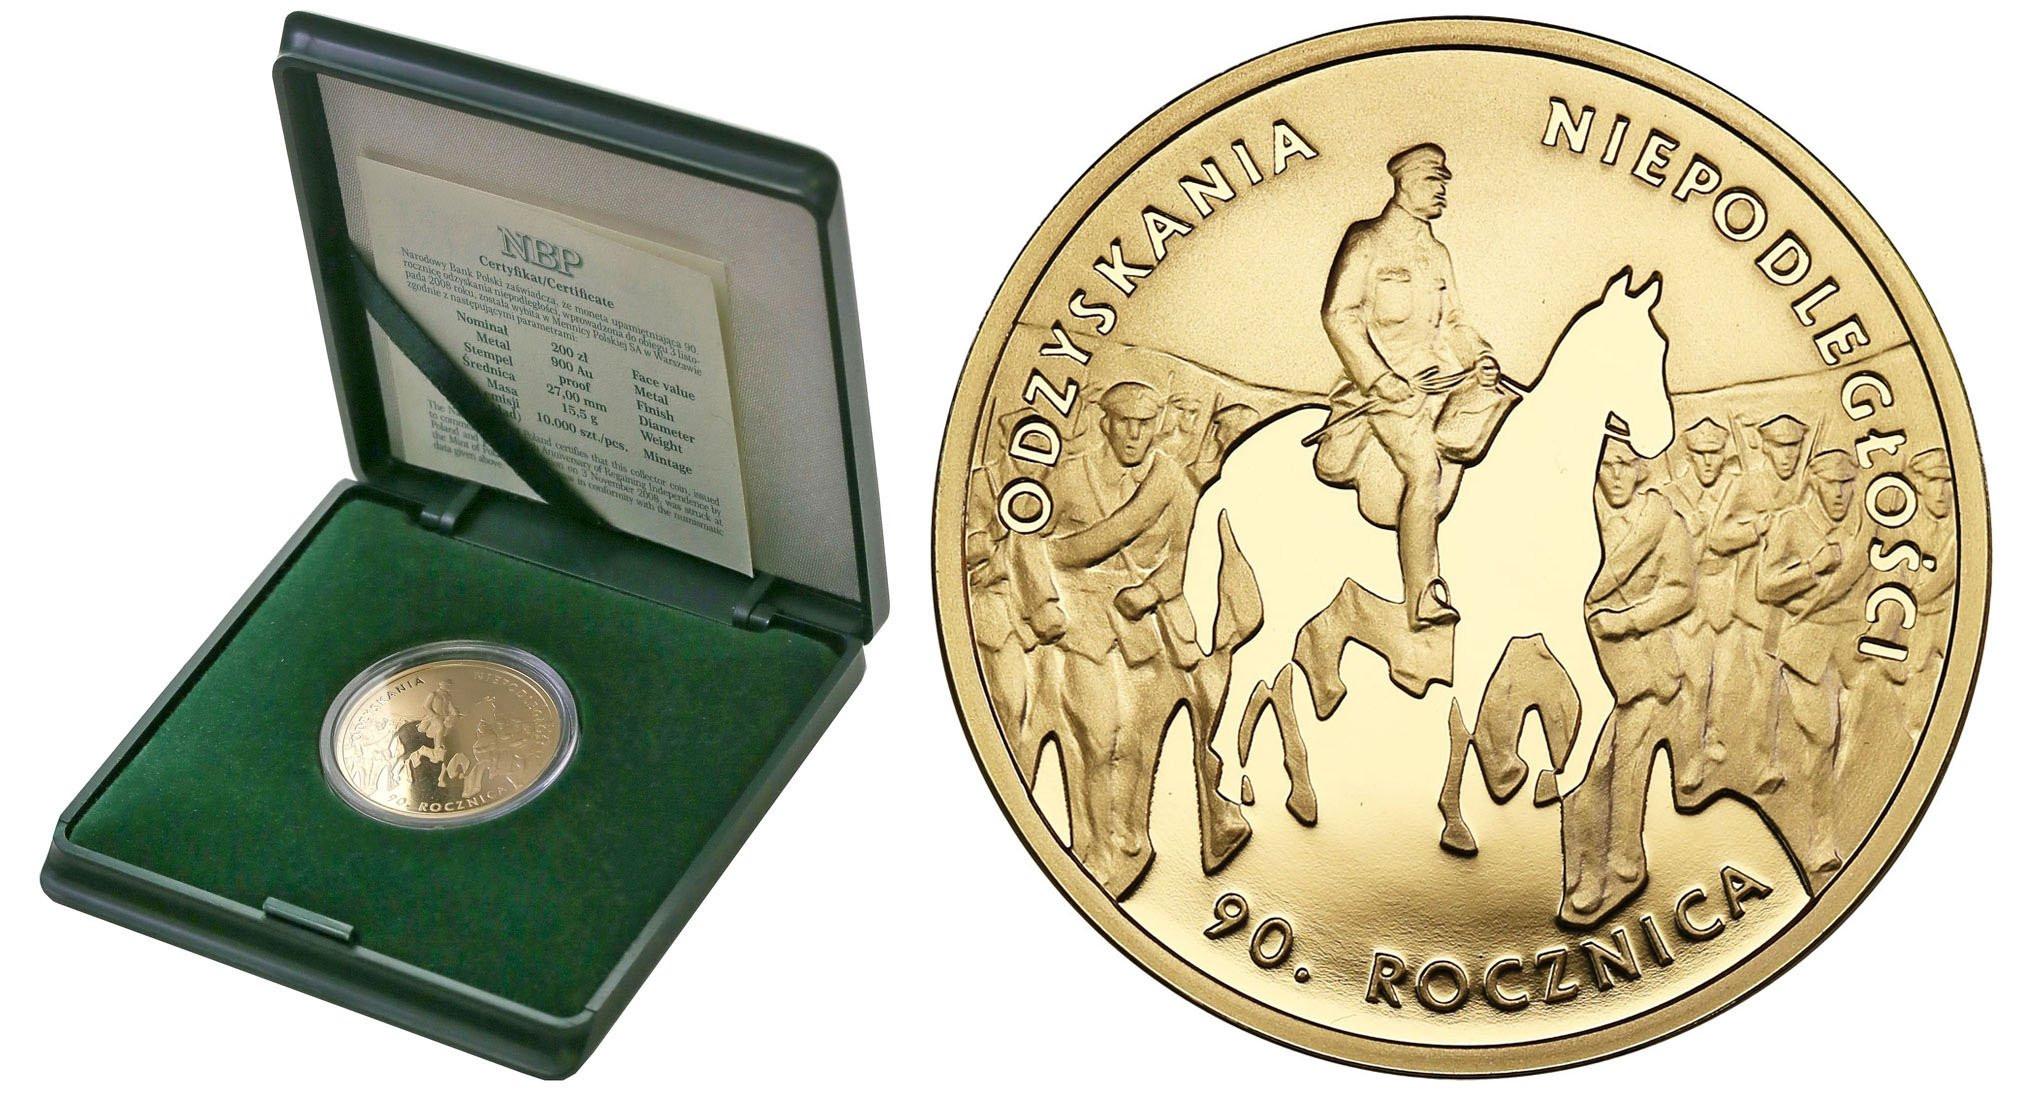 III RP. 200 złotych 2008 90-ta Rocznica Odzyskania Niepodległości